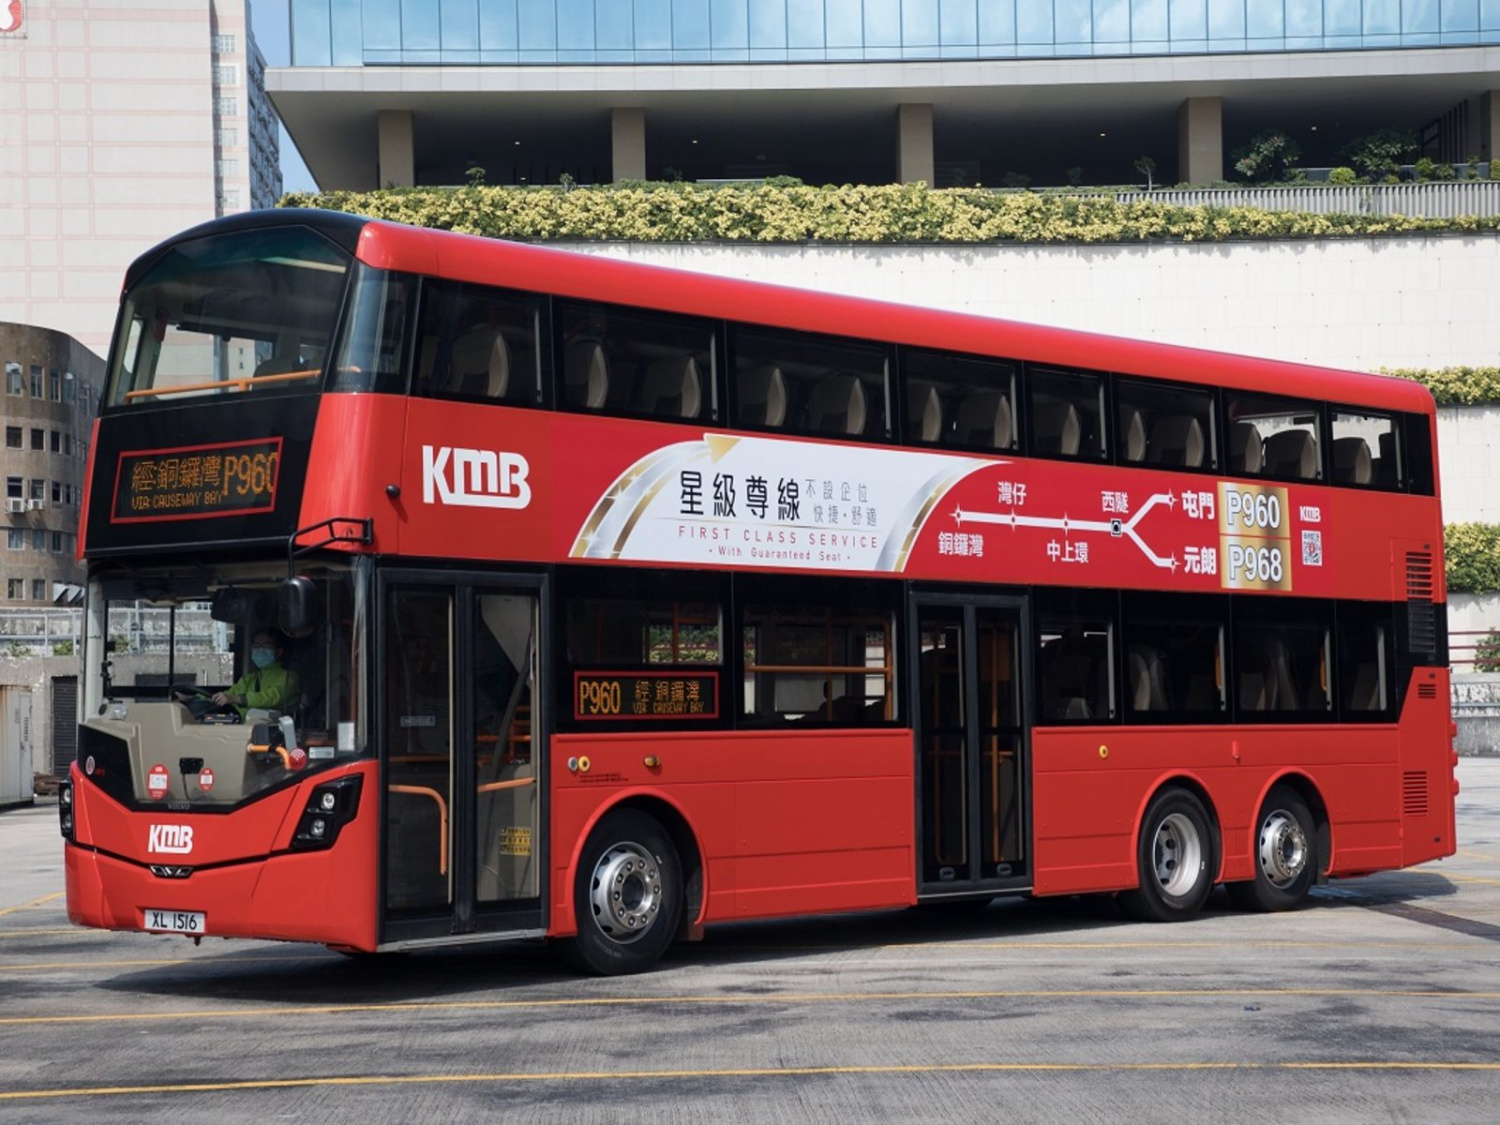 九巴-豪華巴士-新型長途巴士-P960-P968-窗簾-免費Wi-Fi-不設企位-路線資料-香港財經時報-HKBT